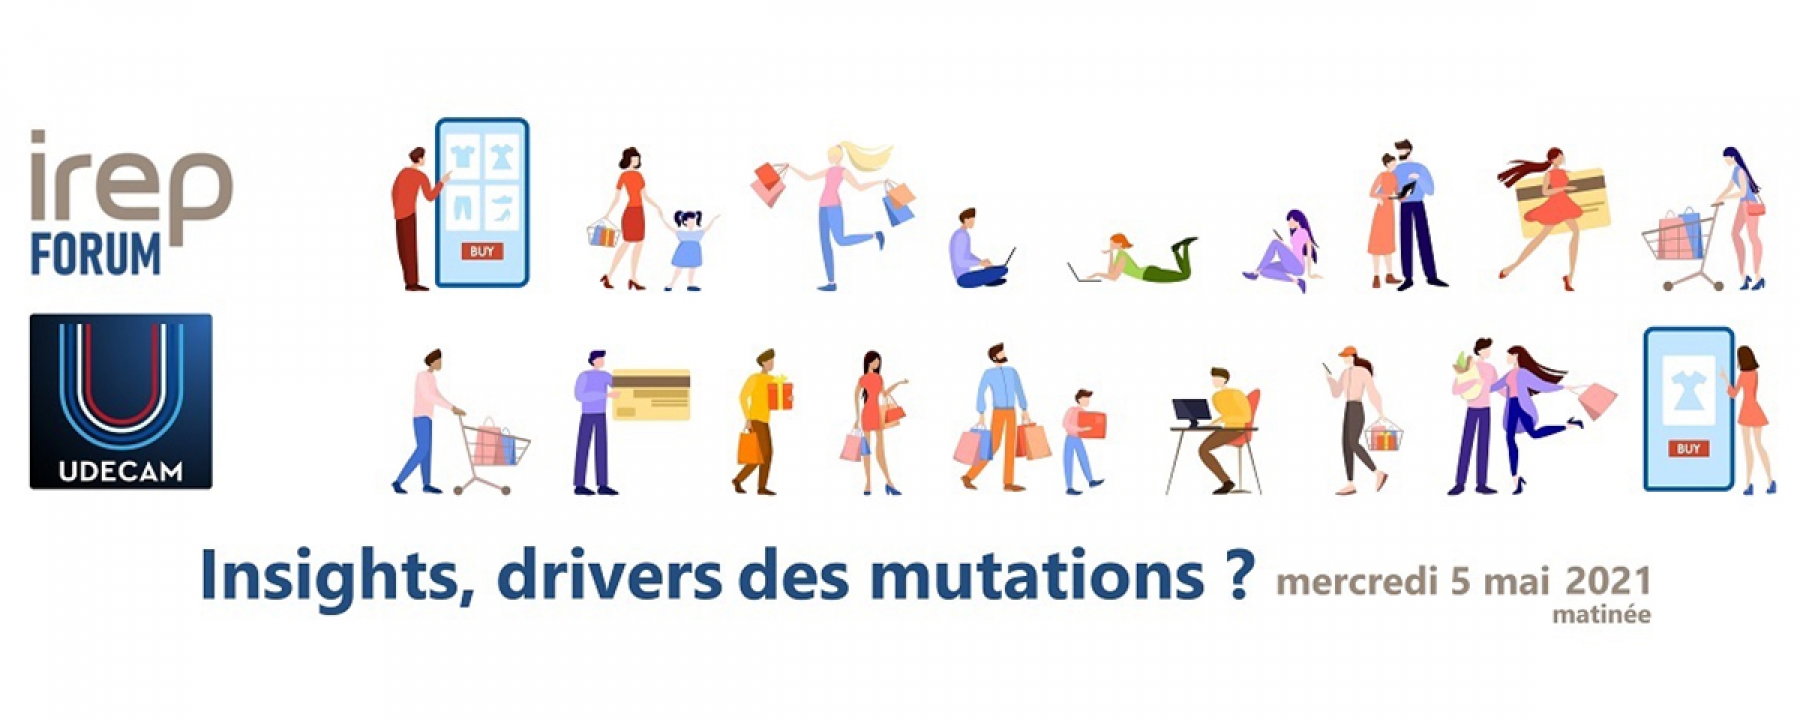 IREP Forum : Insights, drivers des mutations ? organisé par IREP et Udecam le 5 mai 2021